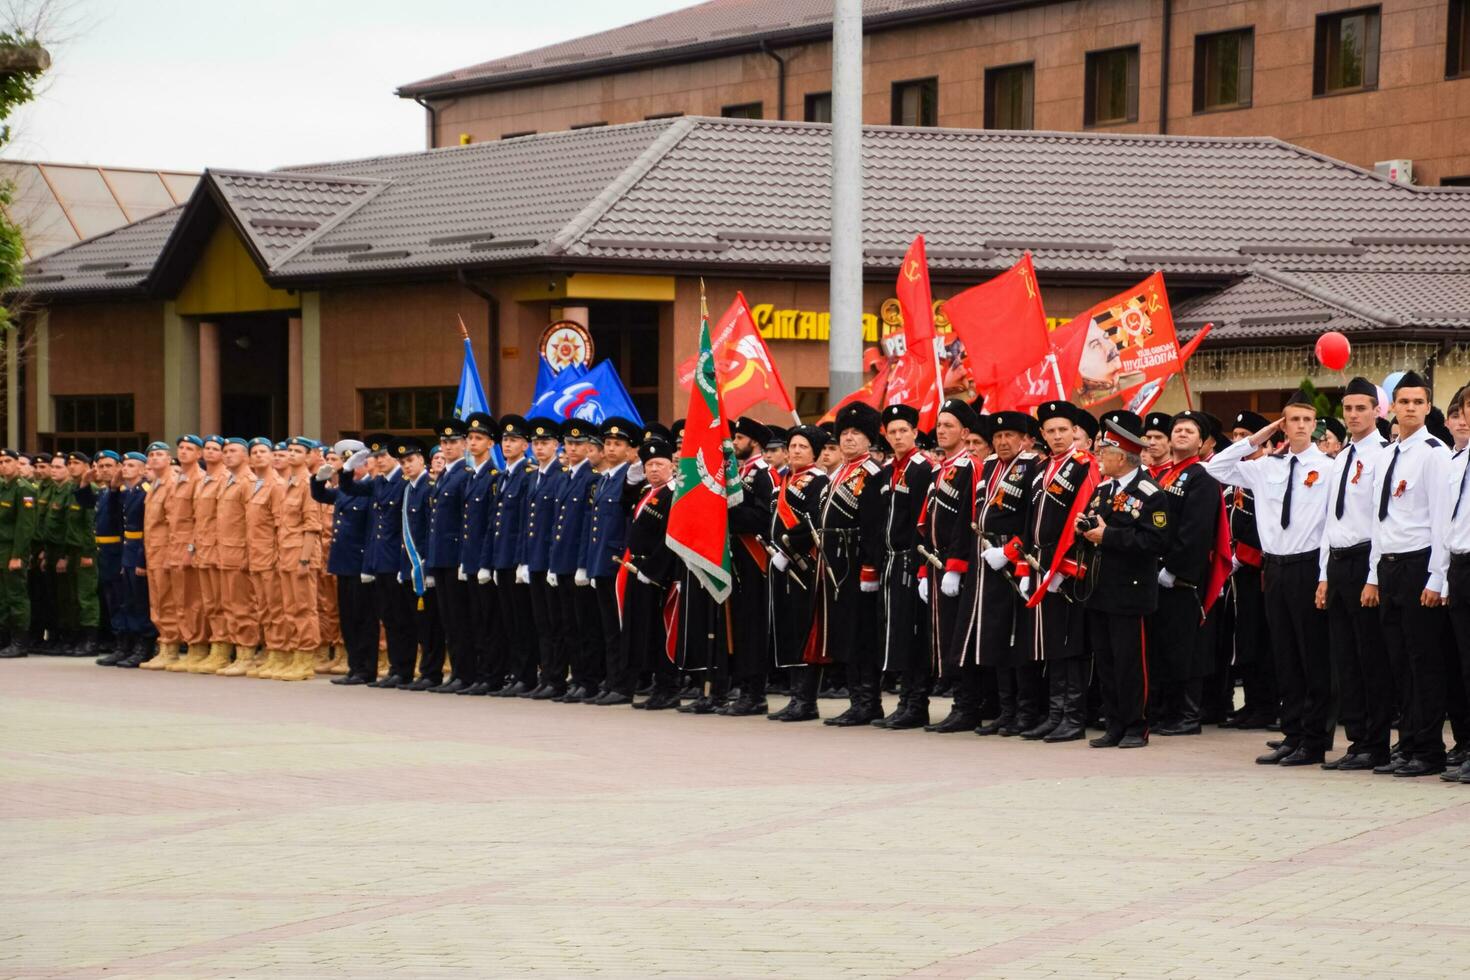 festivo desfile en mayo 9 9 en slavyansk-on-kuban, en honor de victoria día en el genial patriótico guerra. foto